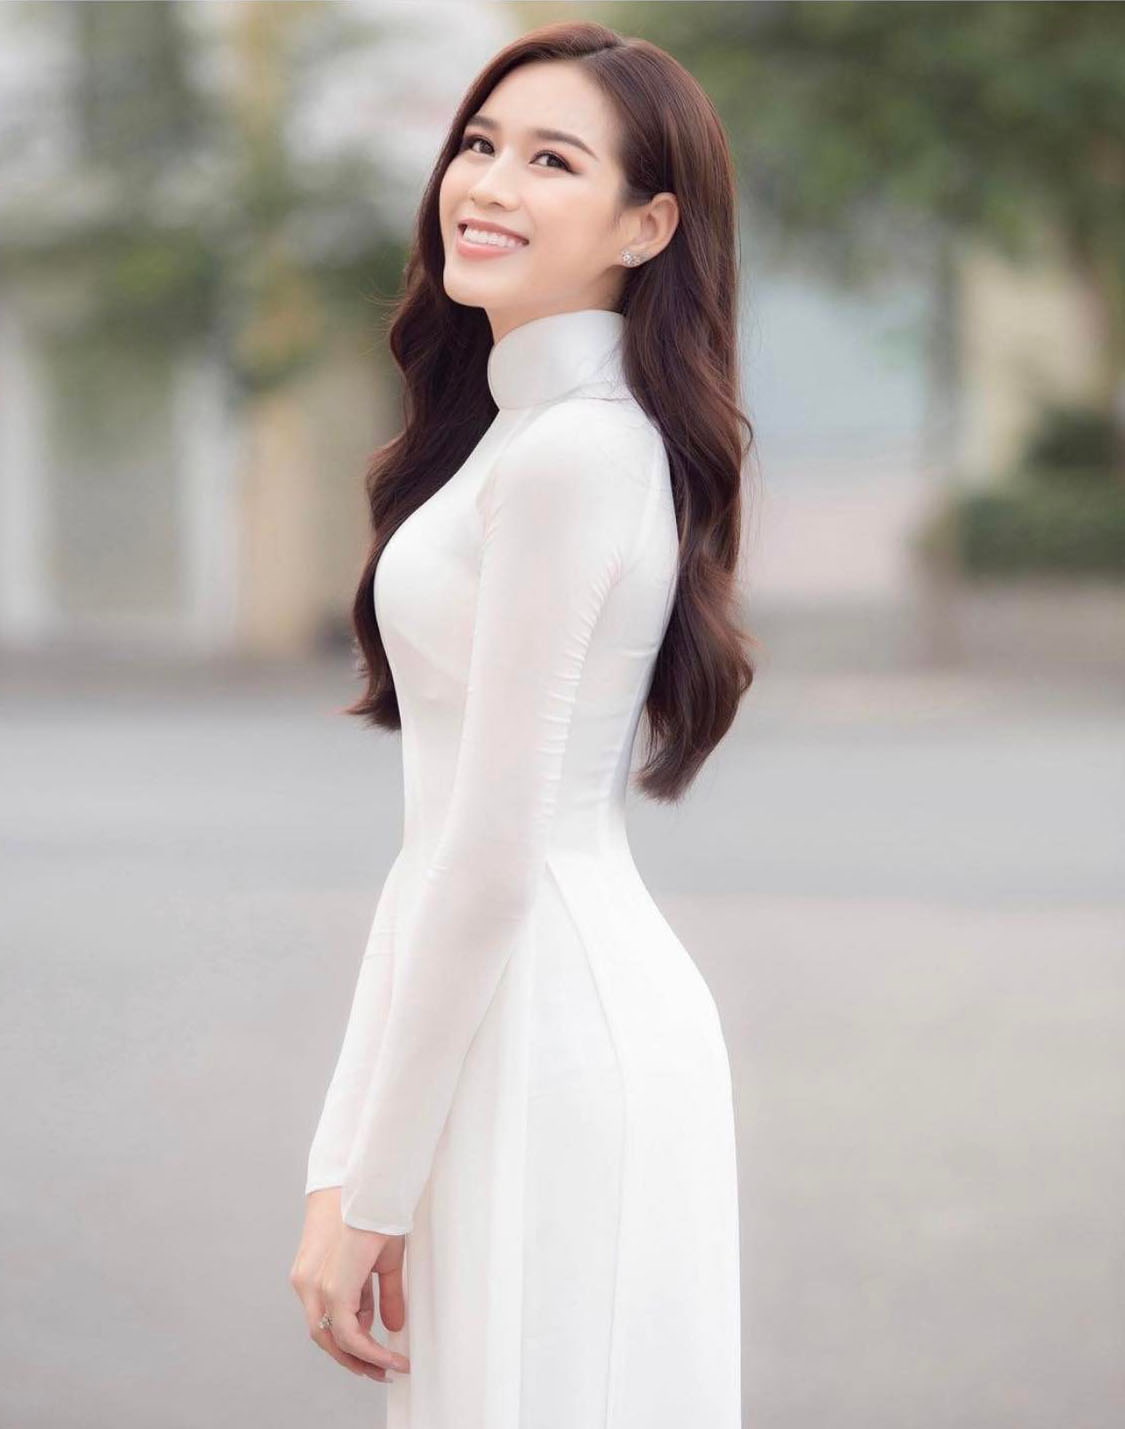 Sau lần mắc lỗi nội y, hoa hậu Đỗ Thị Hà mặc áo dài trắng mỏng sexy mà vẫn như nàng thơ - 1